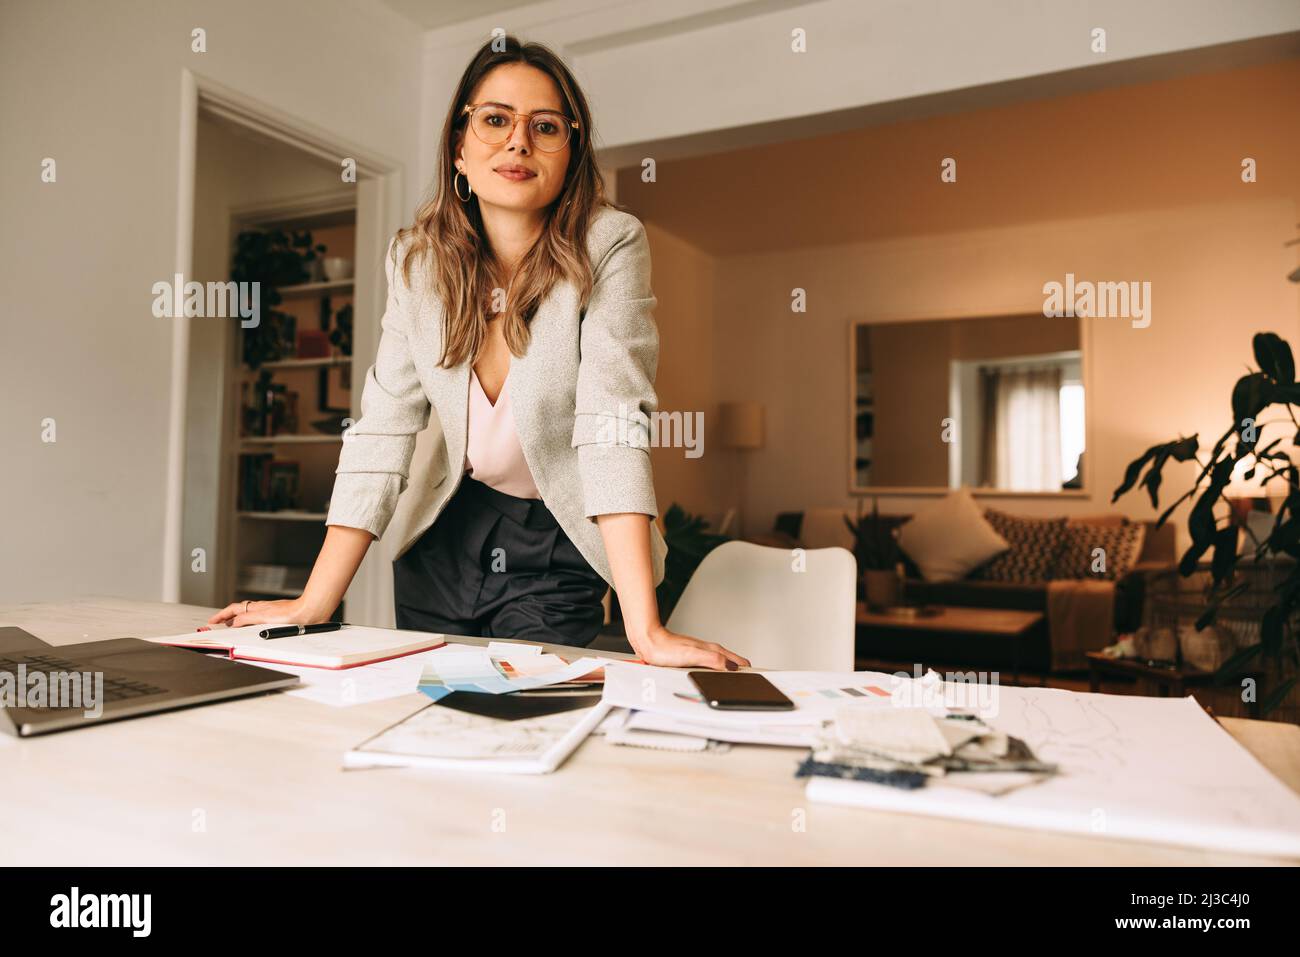 Professionelle Designerin, die in ihrem Heimbüro arbeitet. Junge Geschäftsfrau, die hinter ihrem kreativen Schreibtisch auf die Kamera schaut. Weibliche Designerin p Stockfoto